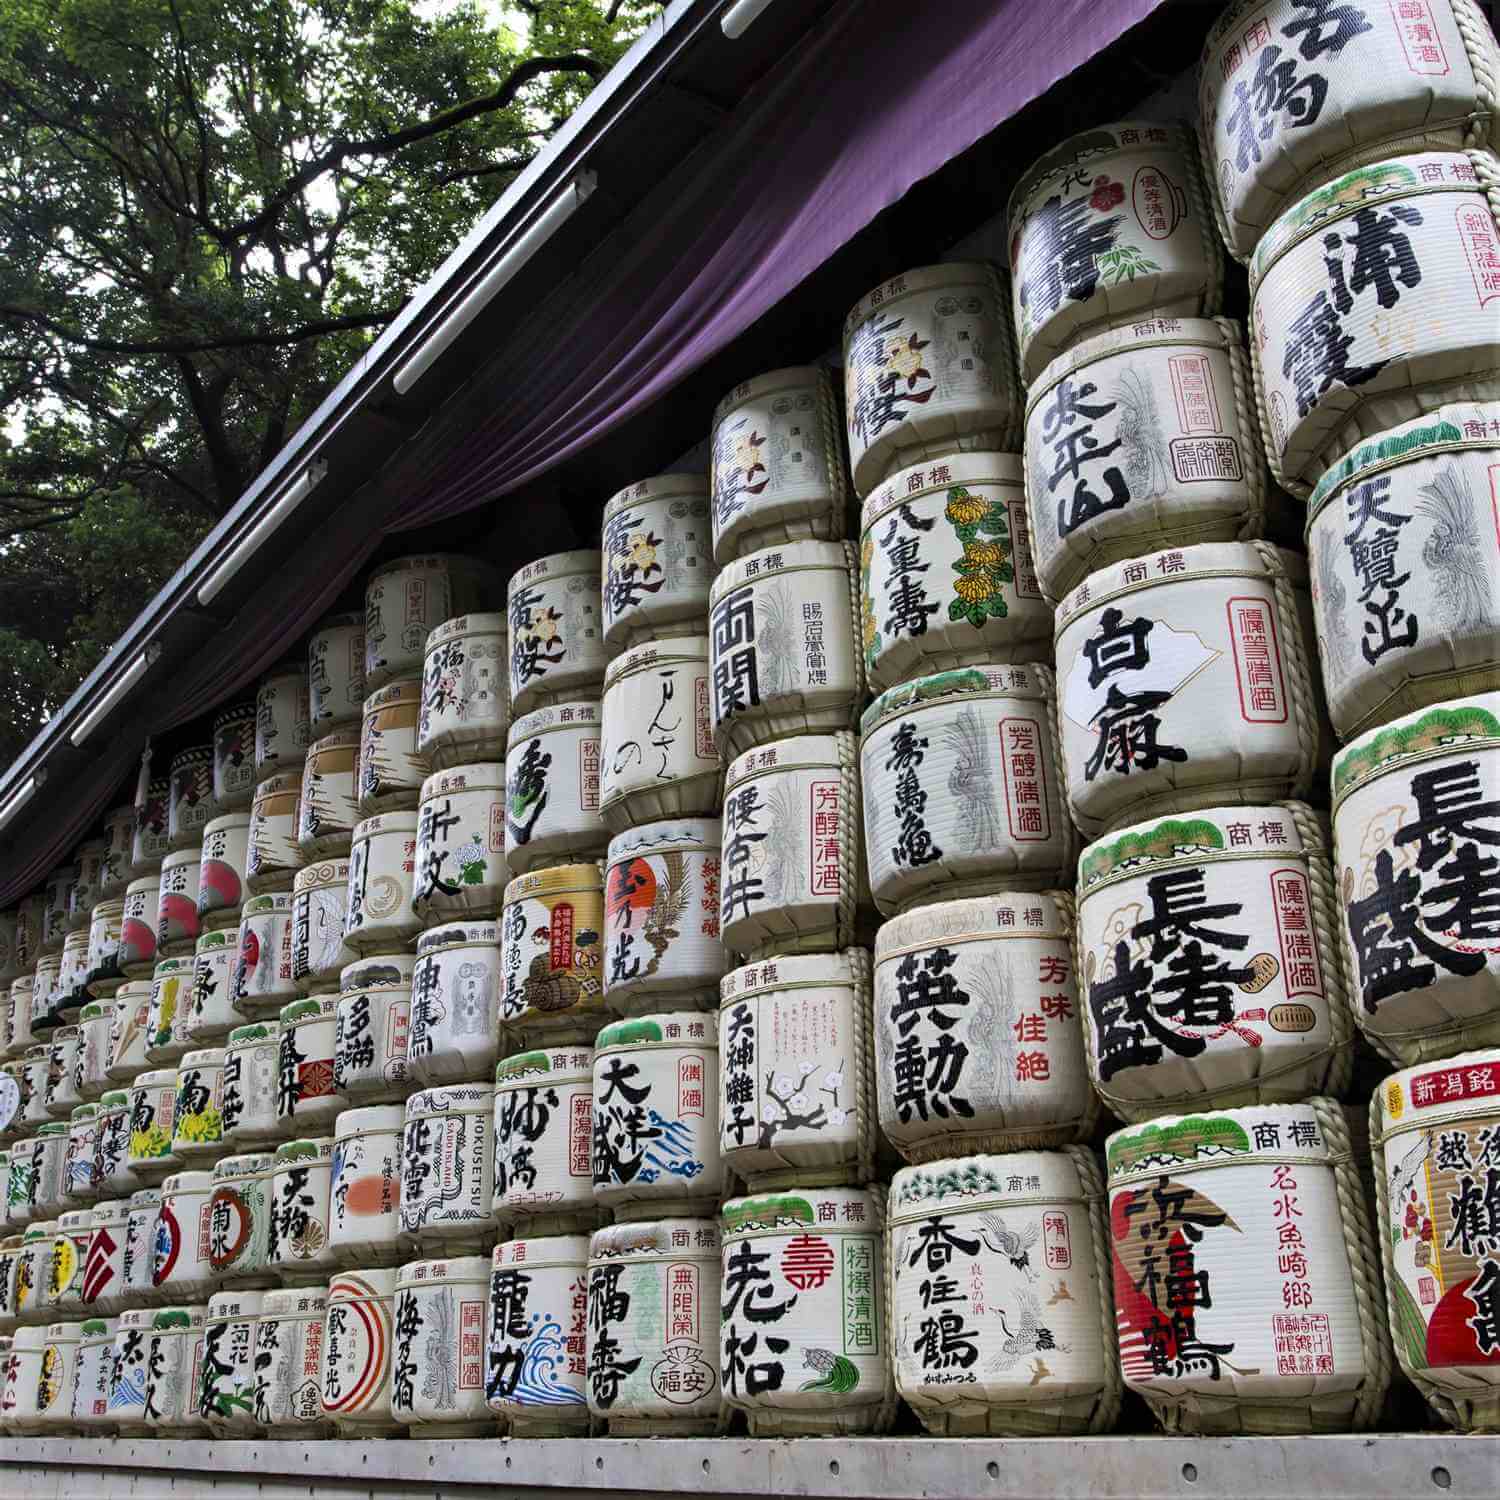 The Meiji Jingu Shrine in Tokyo = Shutterstock 7